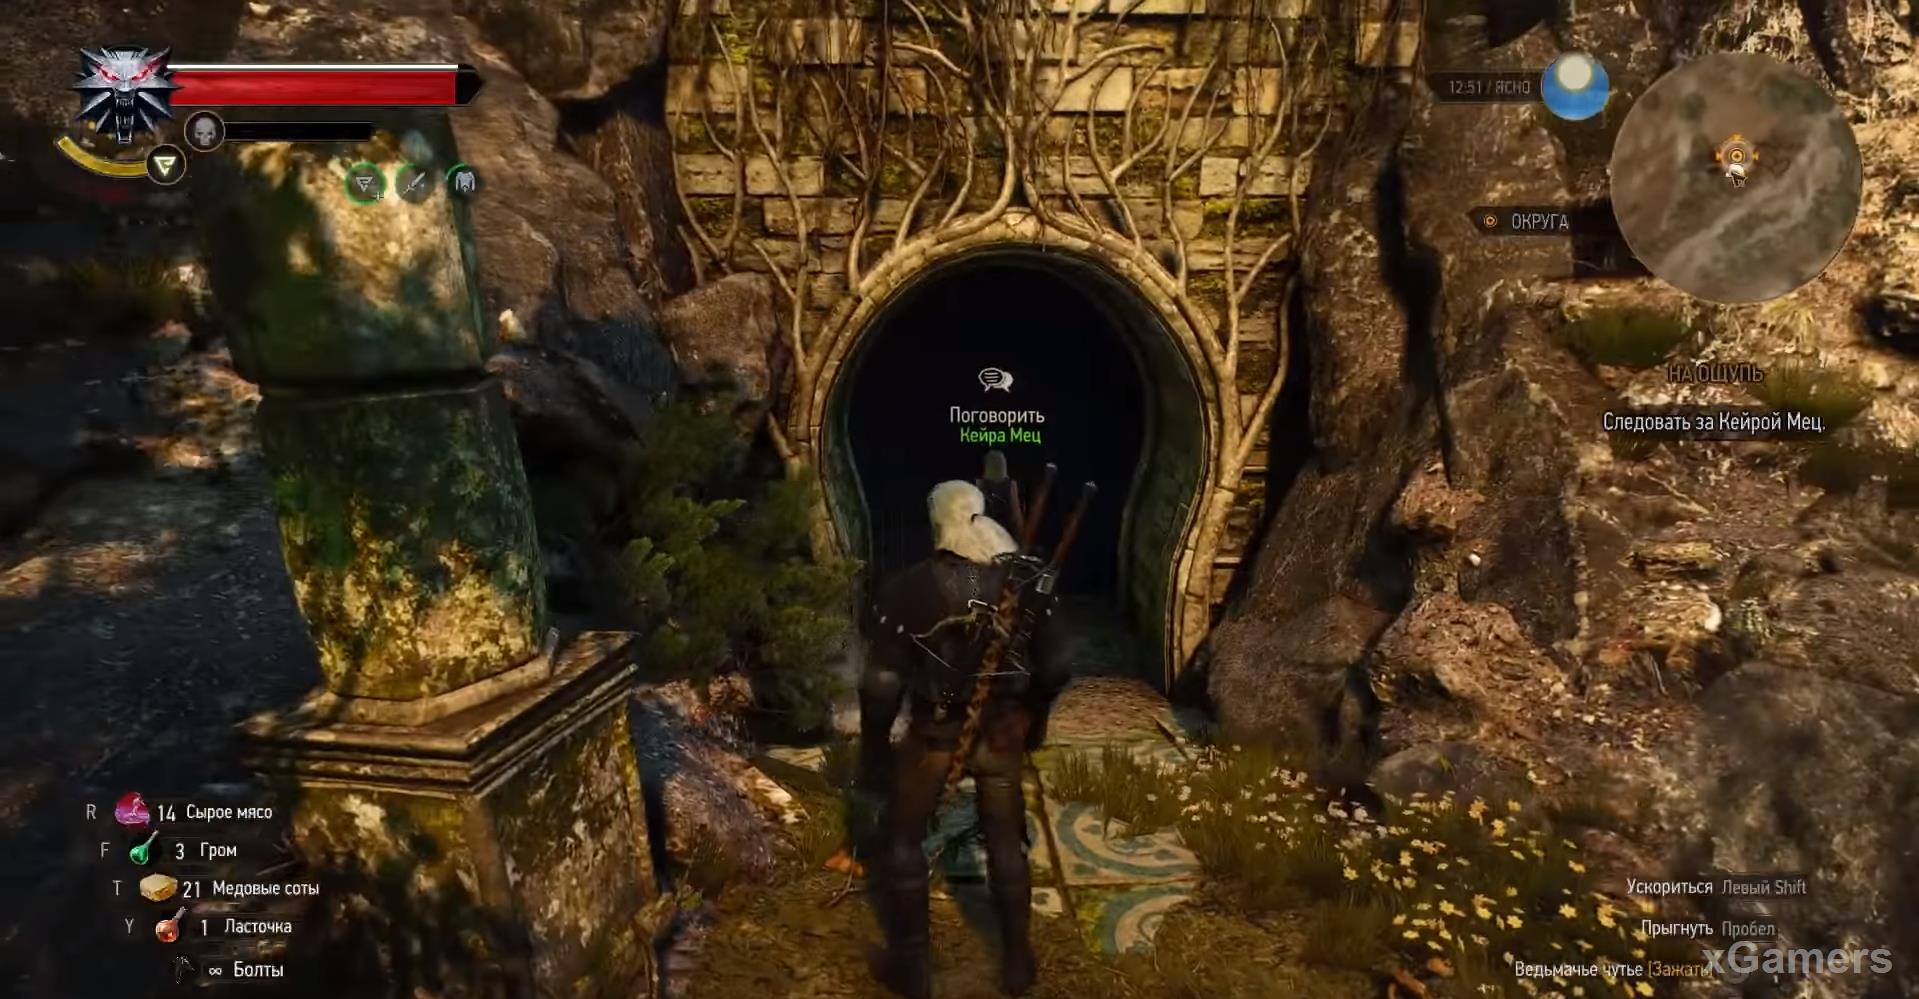 Начало прохождения квеста начинается у входа в пещеру